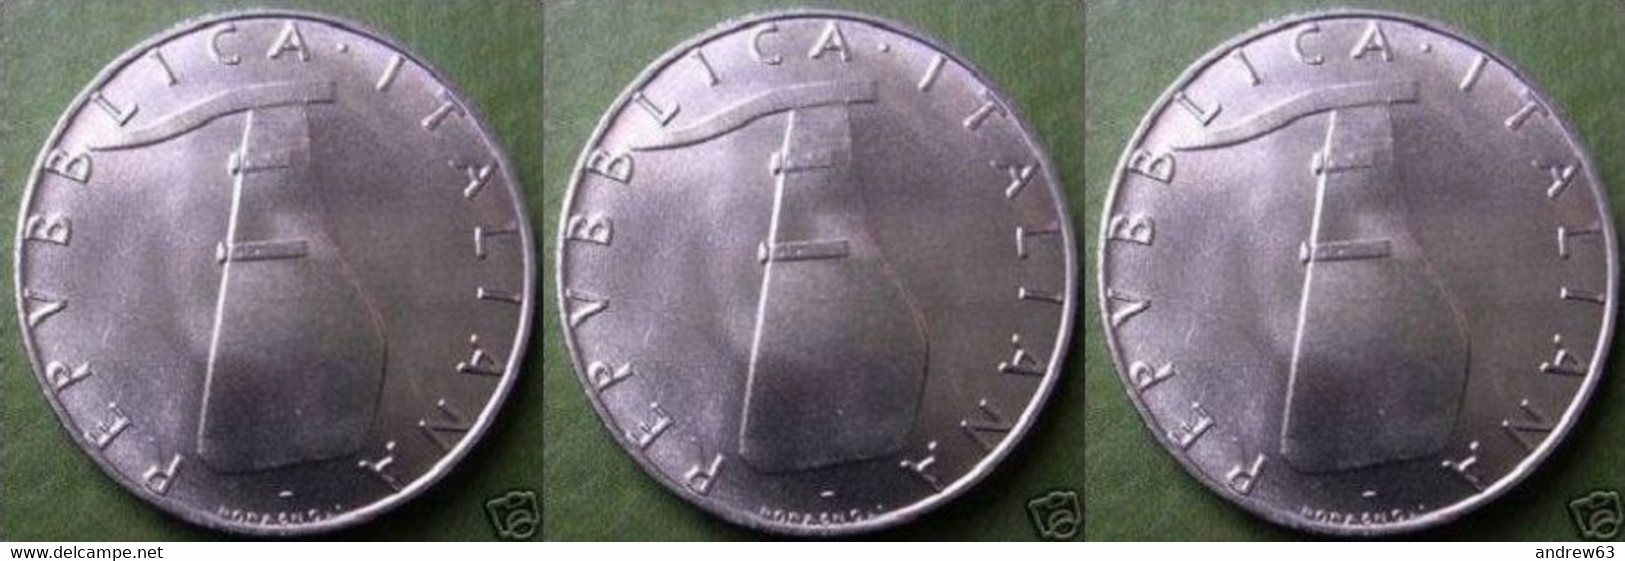 ITALIA - Lire 5 1980 - FDC/Unc Da Rotolino/from Roll 3 Monete/3 Coins - 5 Lire